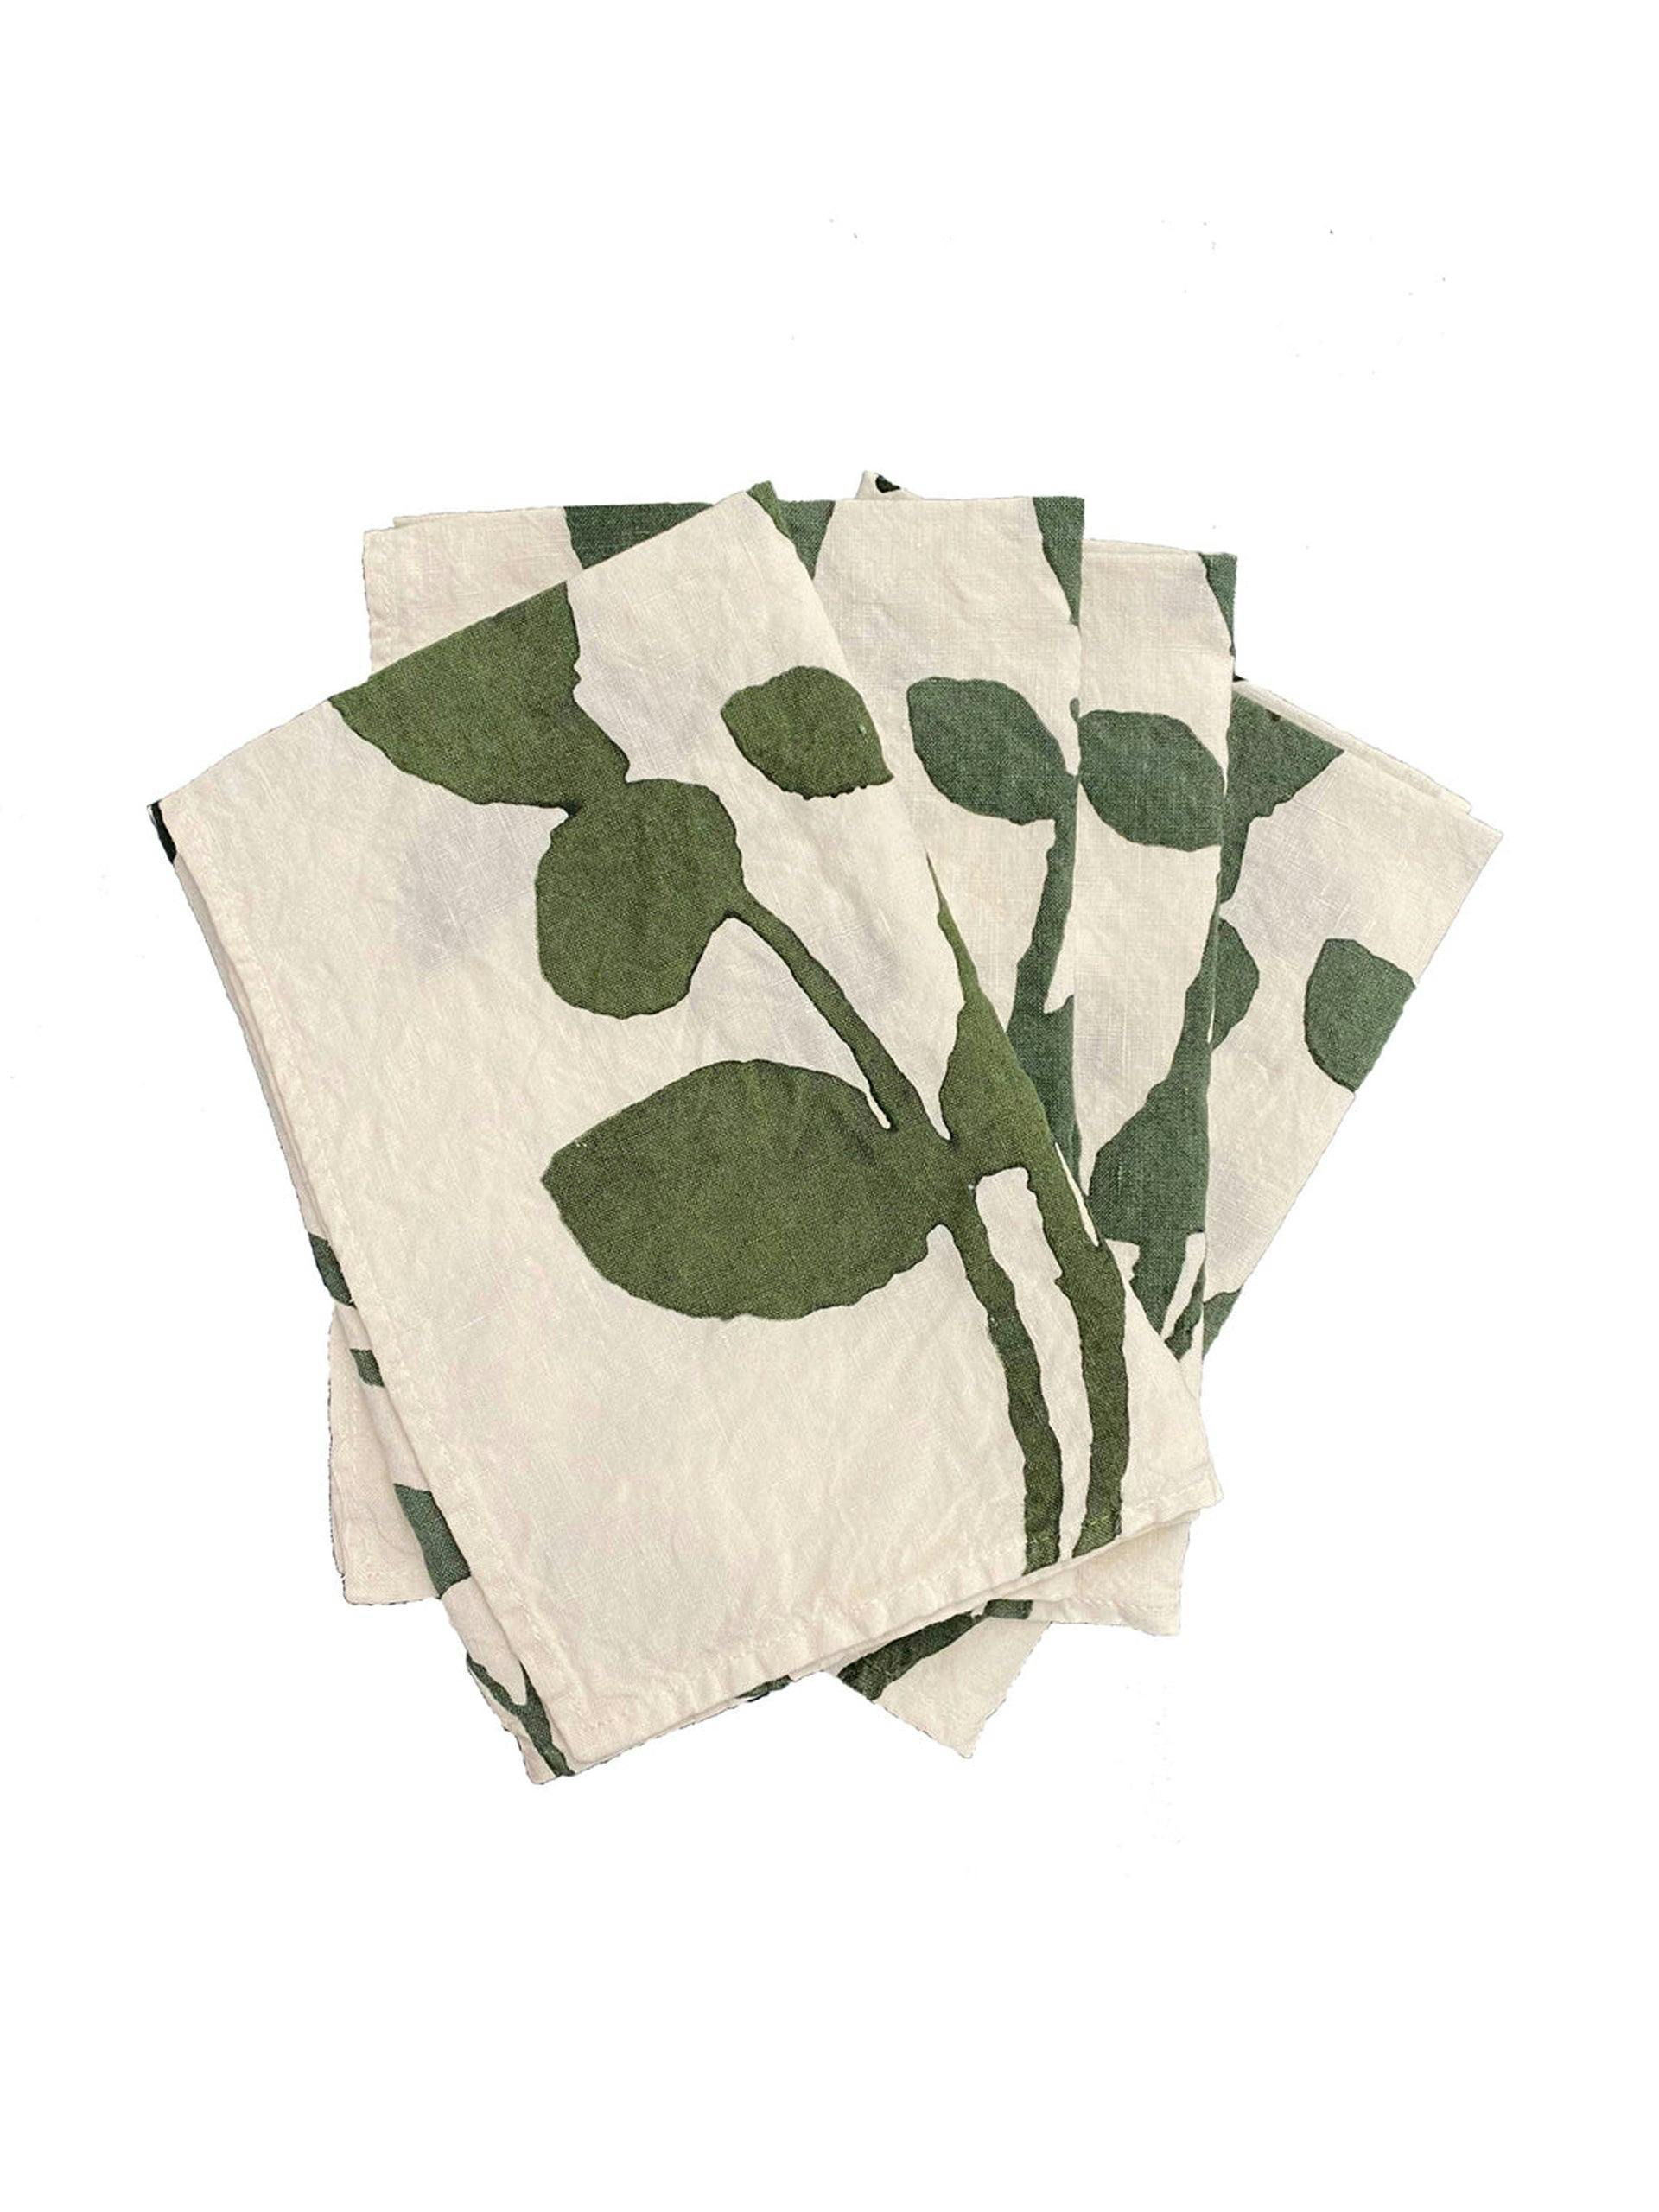 Leaf-print linen napkins (set of 4)